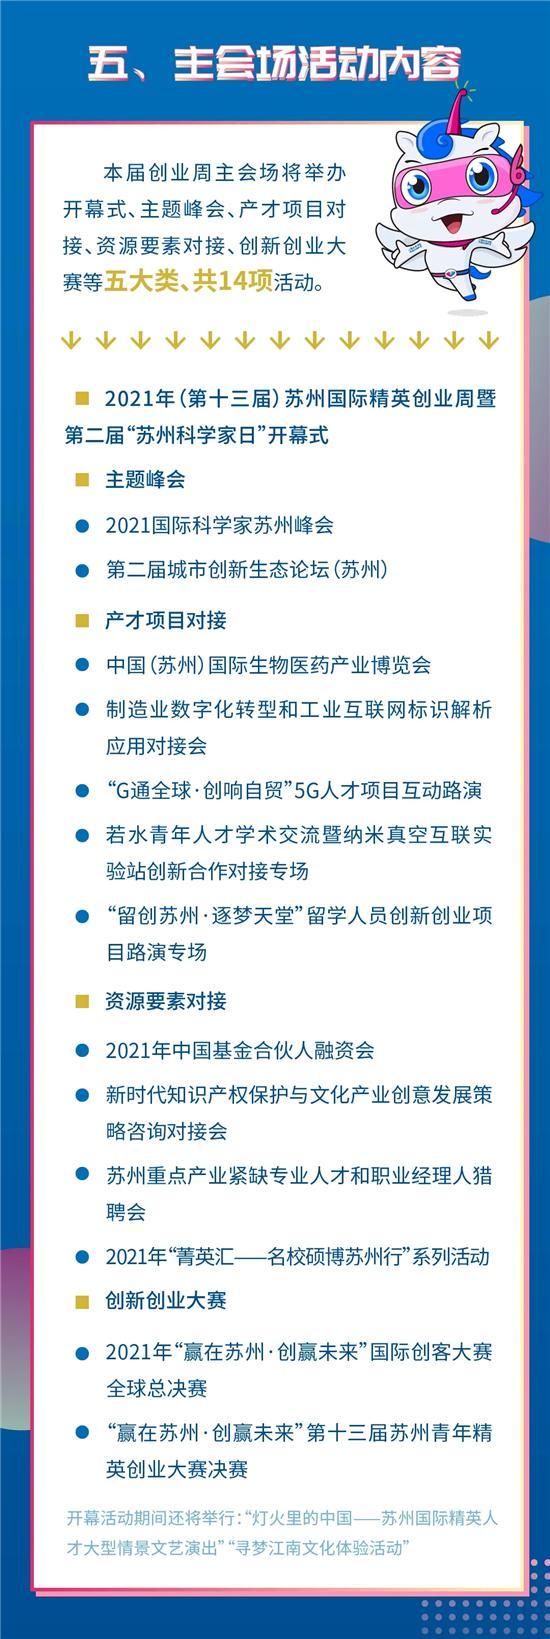 苏州有请!2021年(第十三届)苏州国际精英创业周将于7月10日开幕